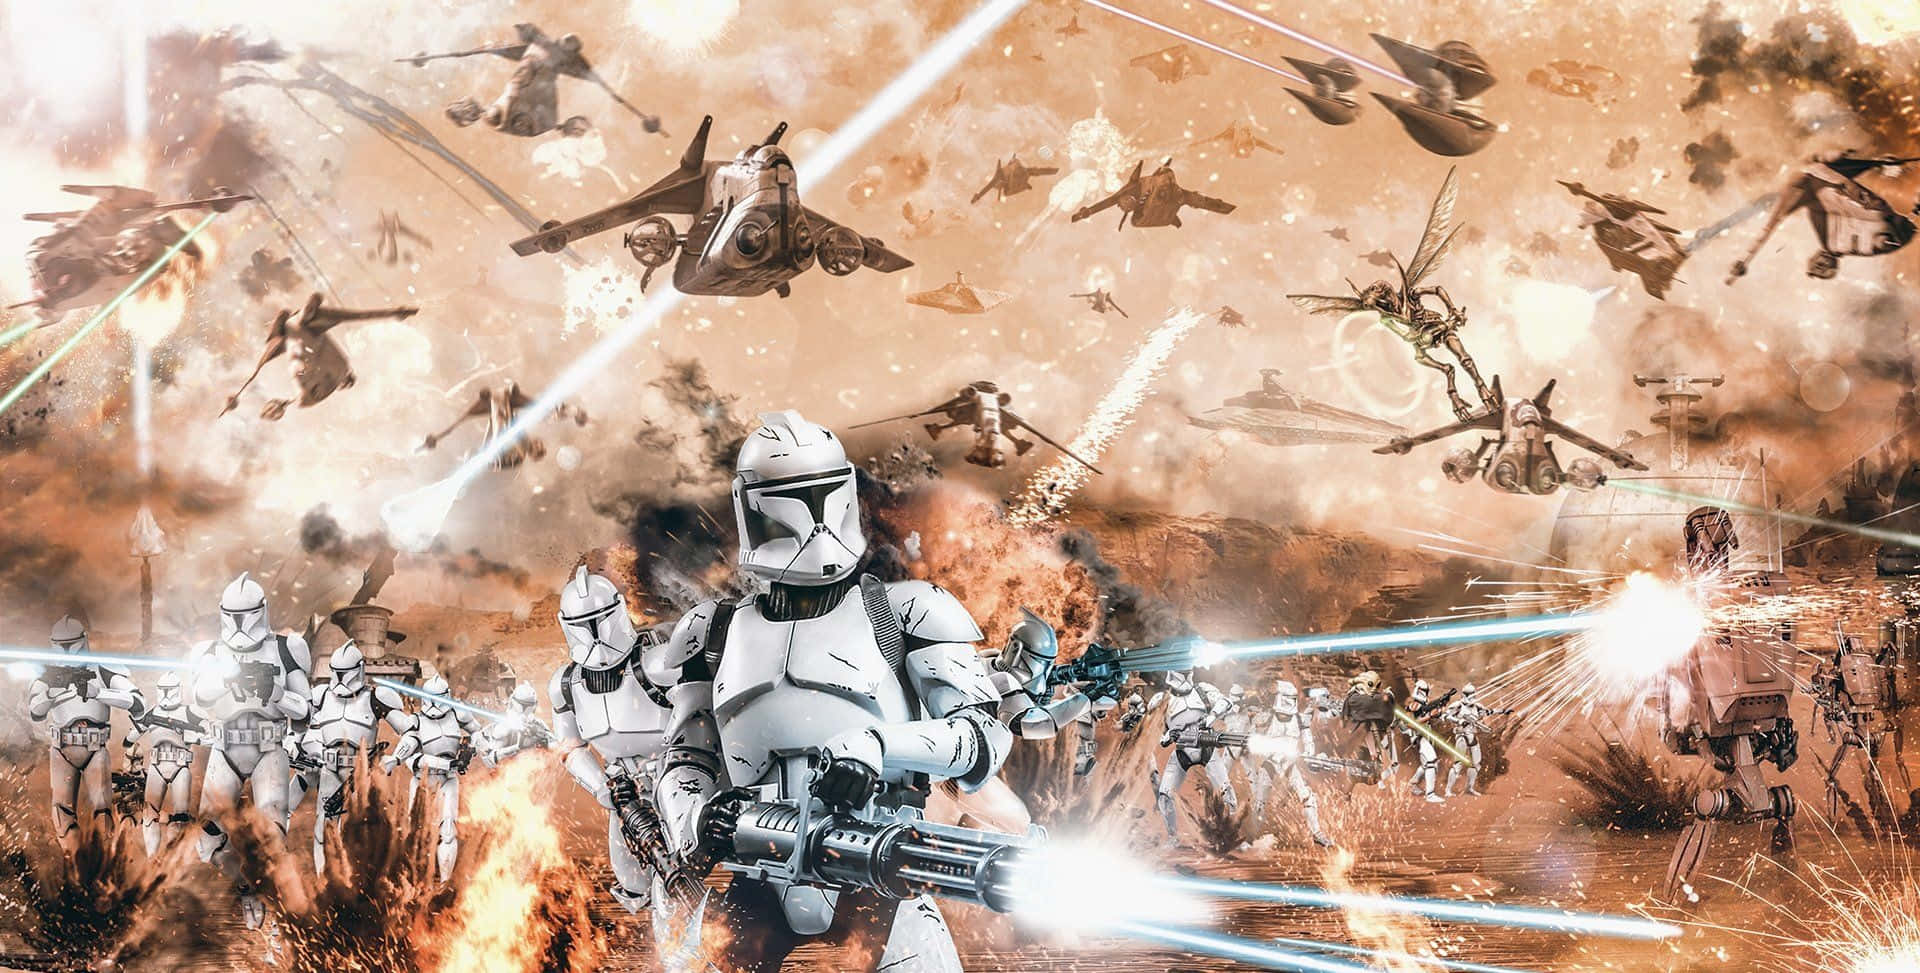 Unreggimento Di Clone Troopers Vestiti Con Armature Bianche, Marciando Per Adempiere Al Loro Dovere Nella Repubblica Galattica. Sfondo